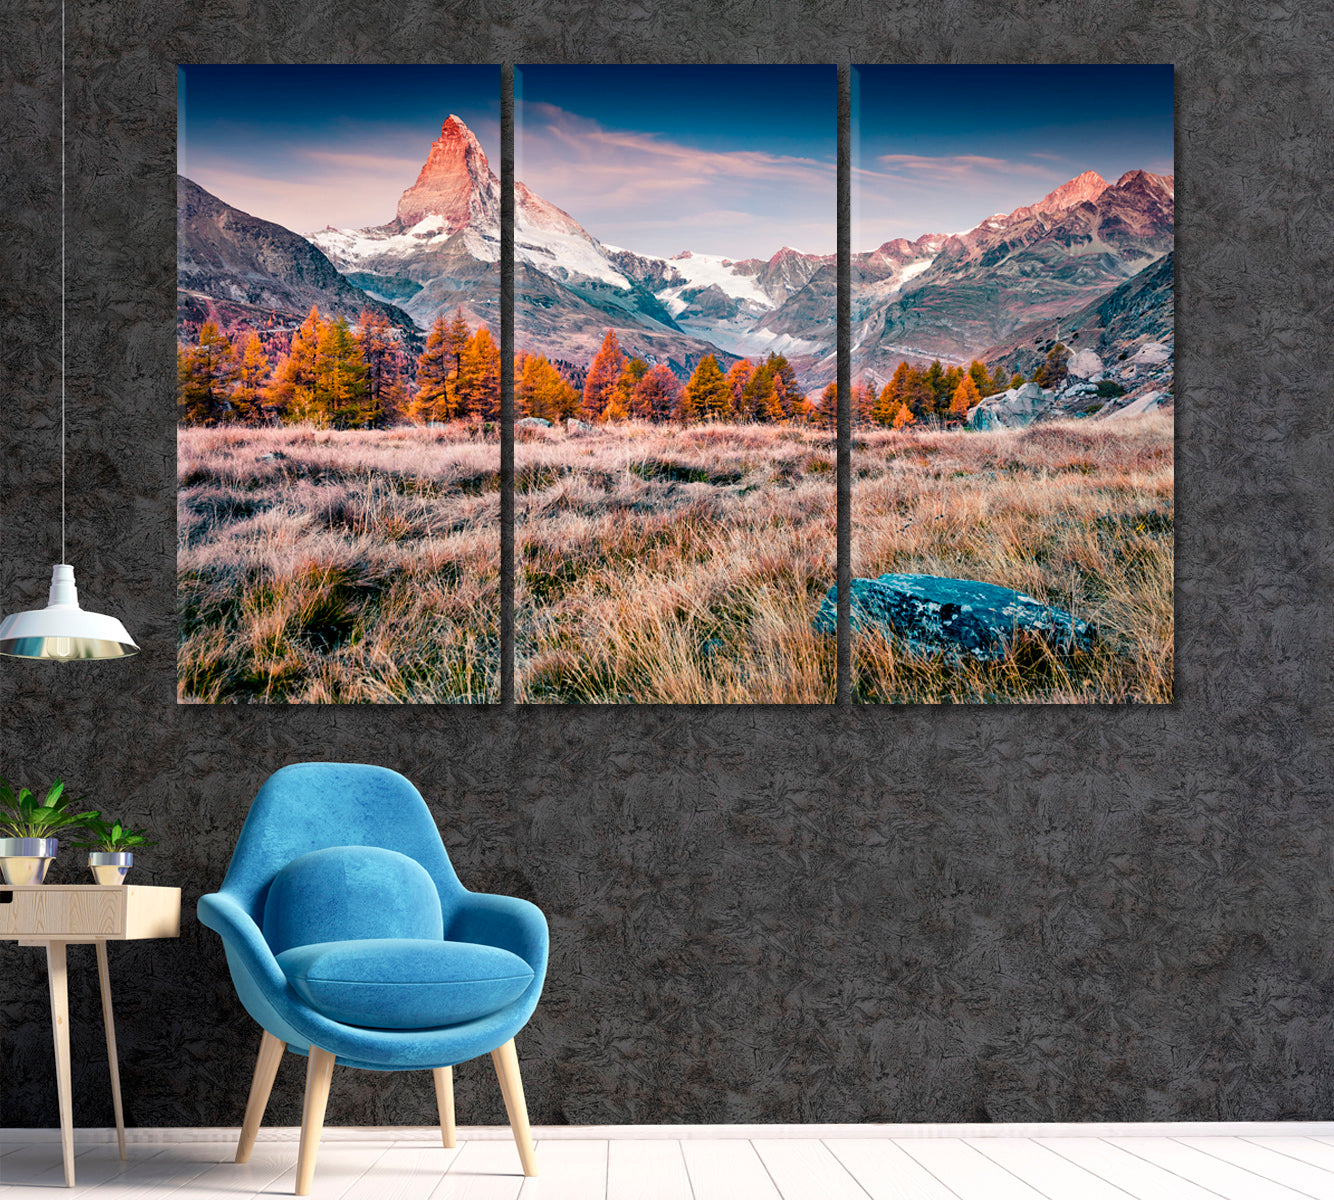 Autumn Landscape Mountain Matterhorn Swiss Alps Canvas Print ArtLexy 3 Panels 36"x24" inches 